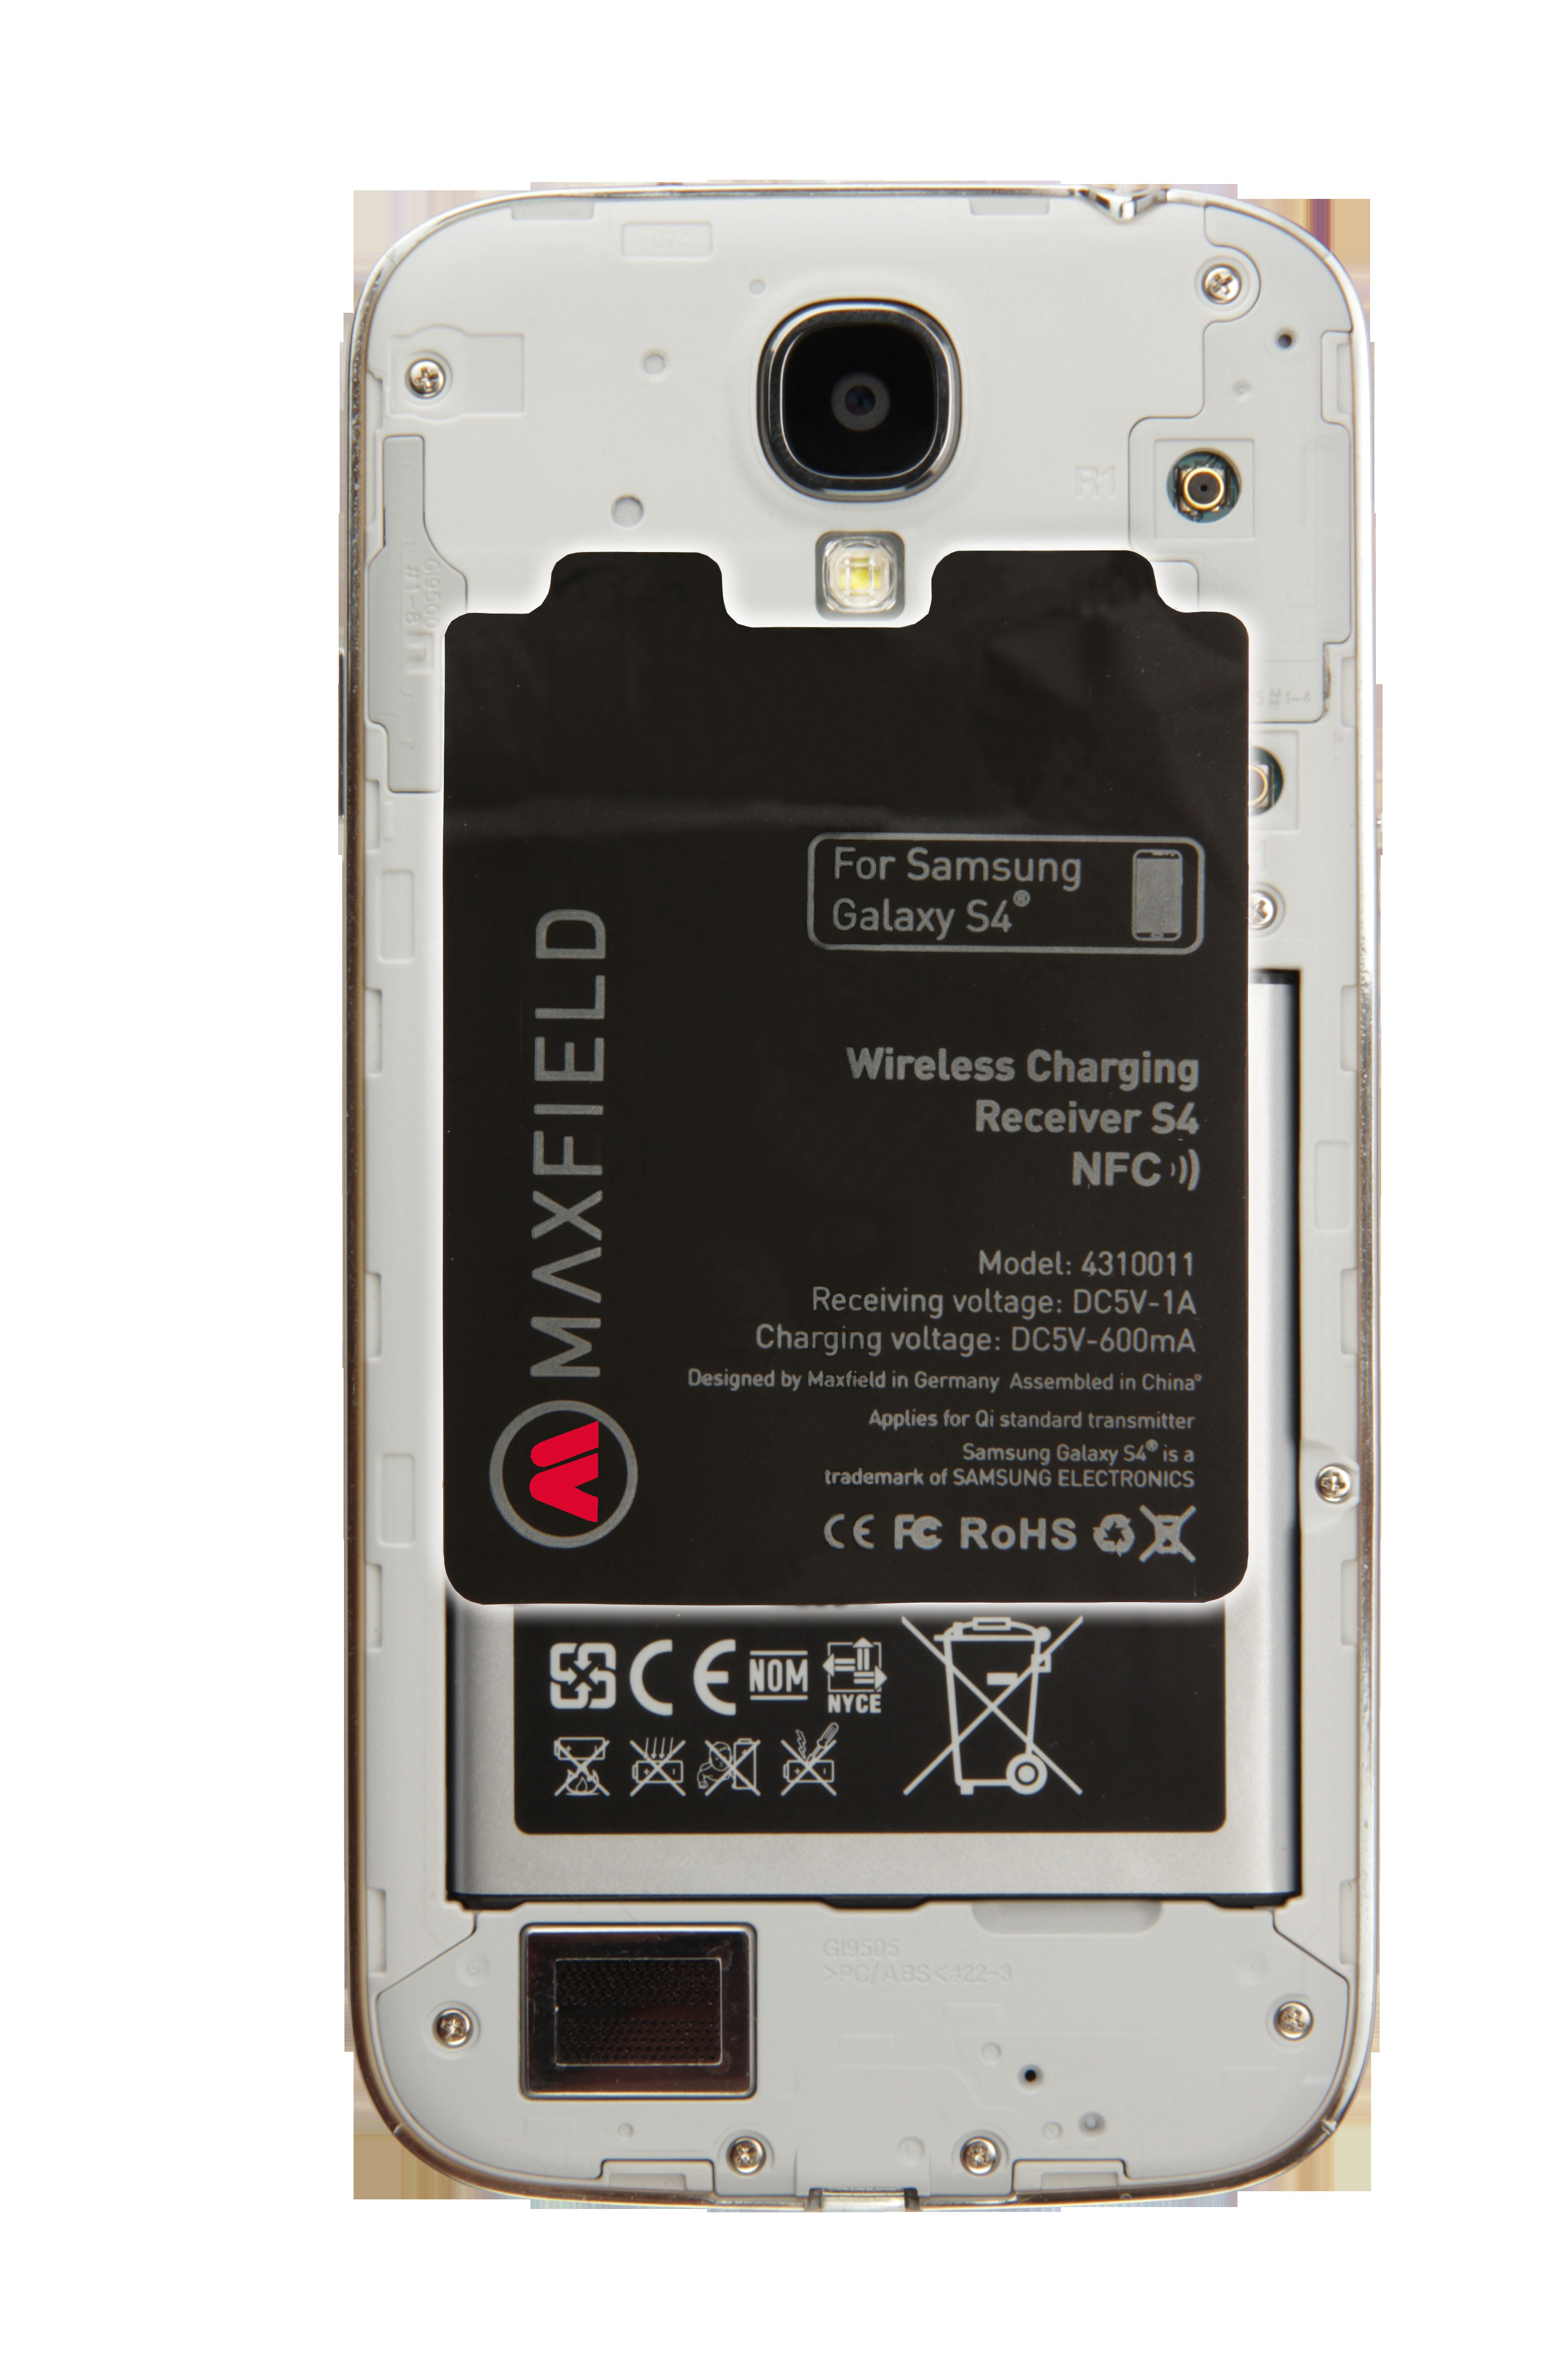 MAXFIELD Charging, S4 NFC, Wireless Samsung, Schwarz mit Galaxy